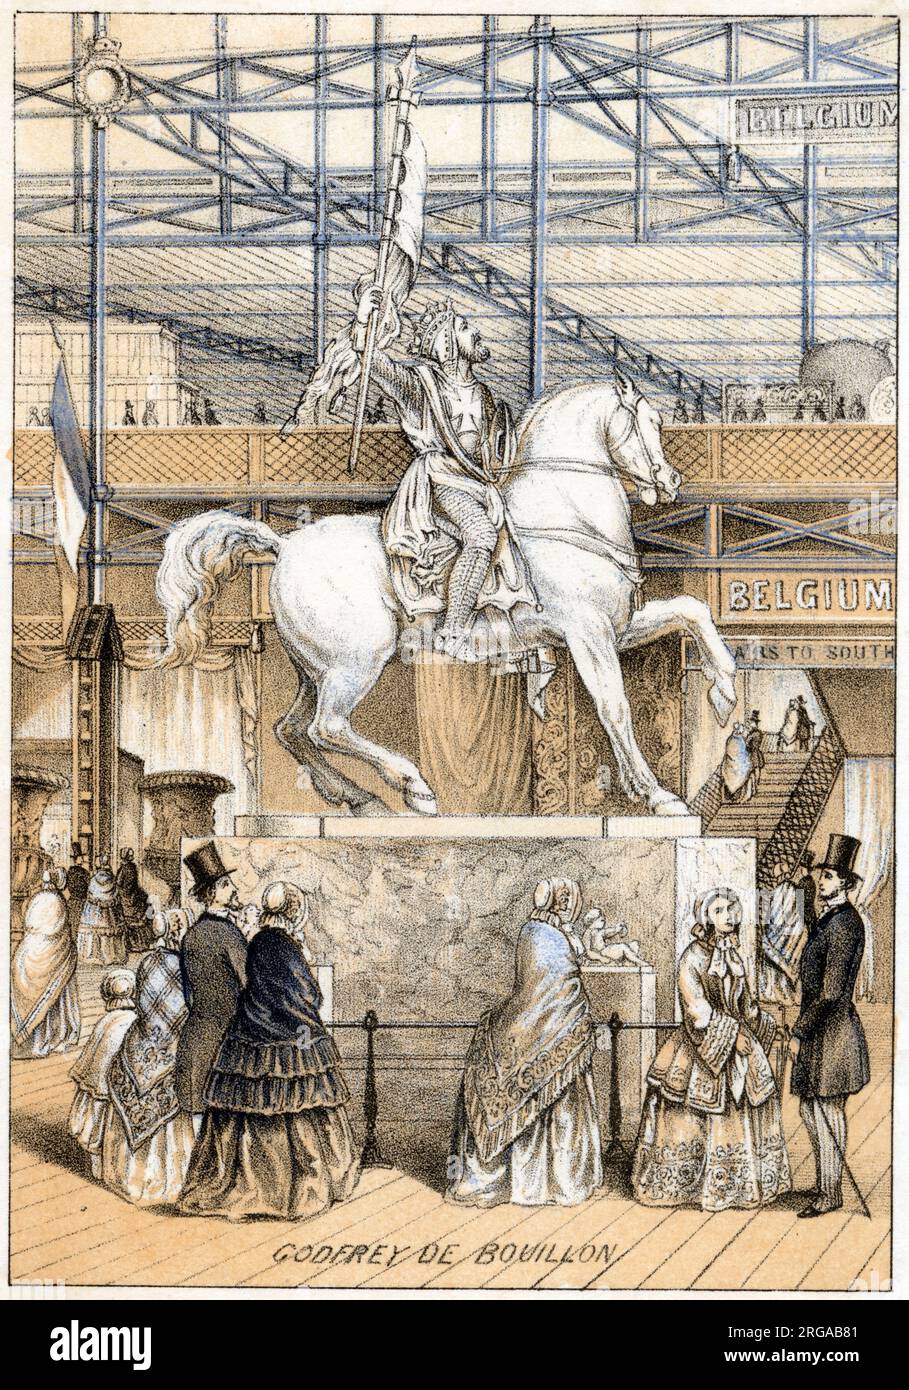 Die große Ausstellung von 1851, Hyde Park, London - Statue von Godfrey de Bouillon Stockfoto